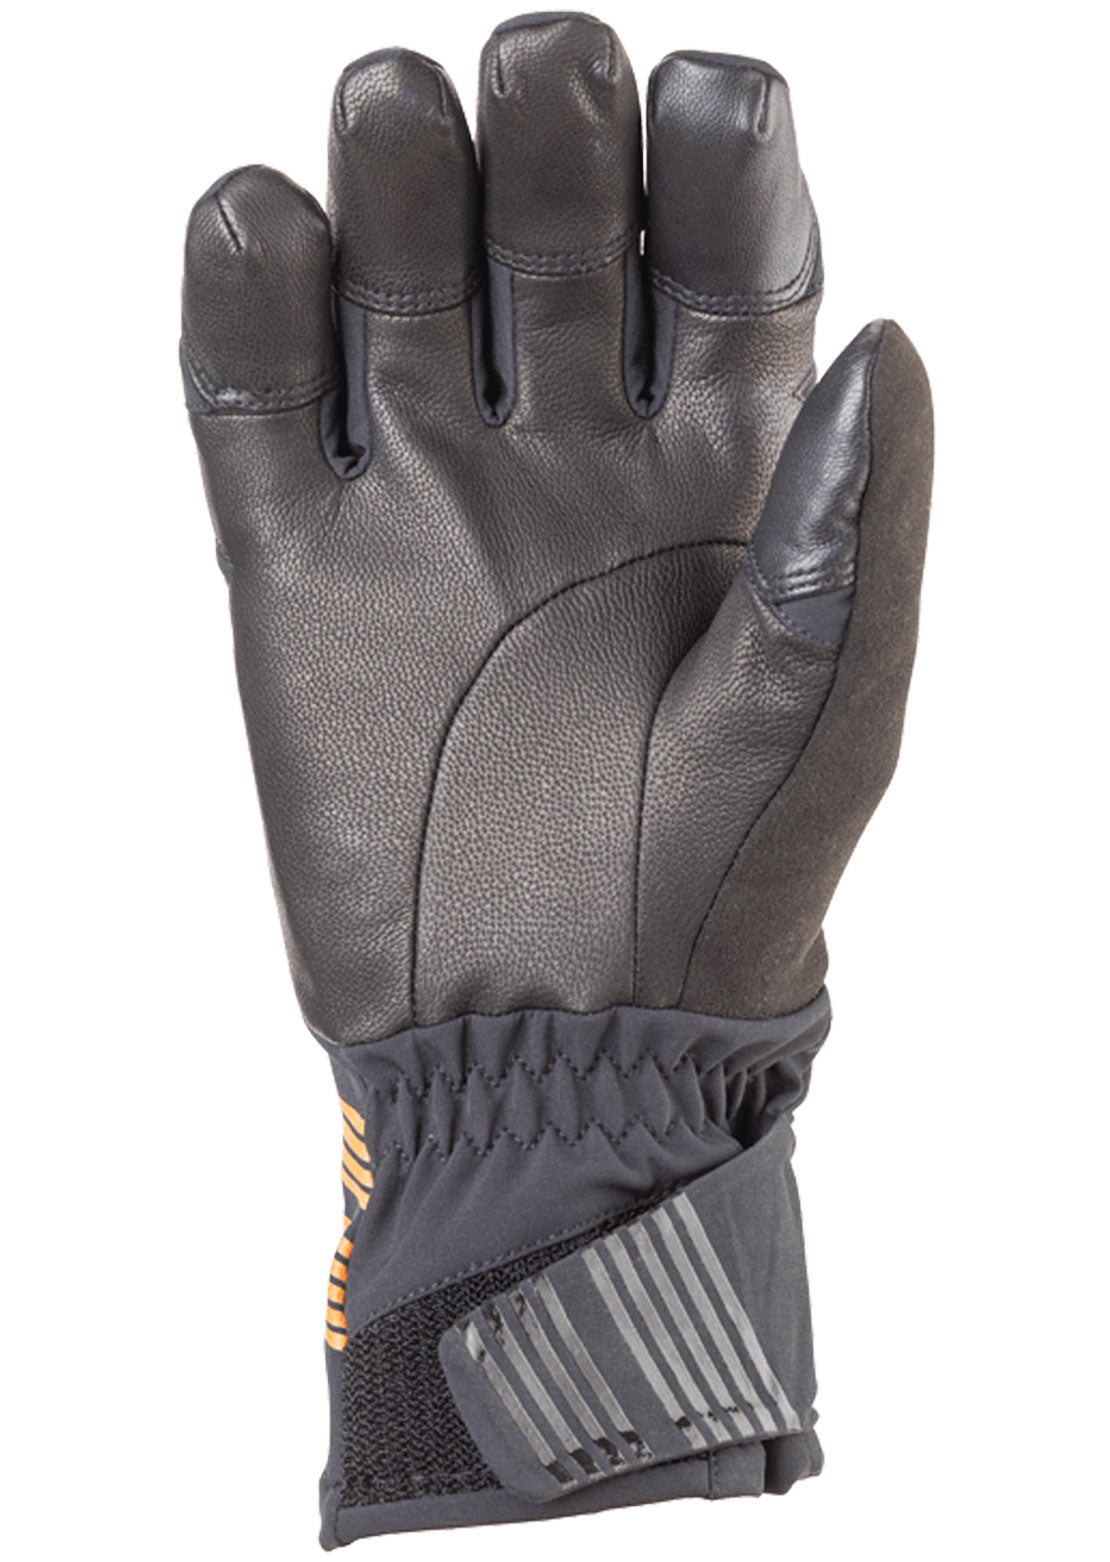 45NRTH Sturmfist 5 Full Finger Gloves Black